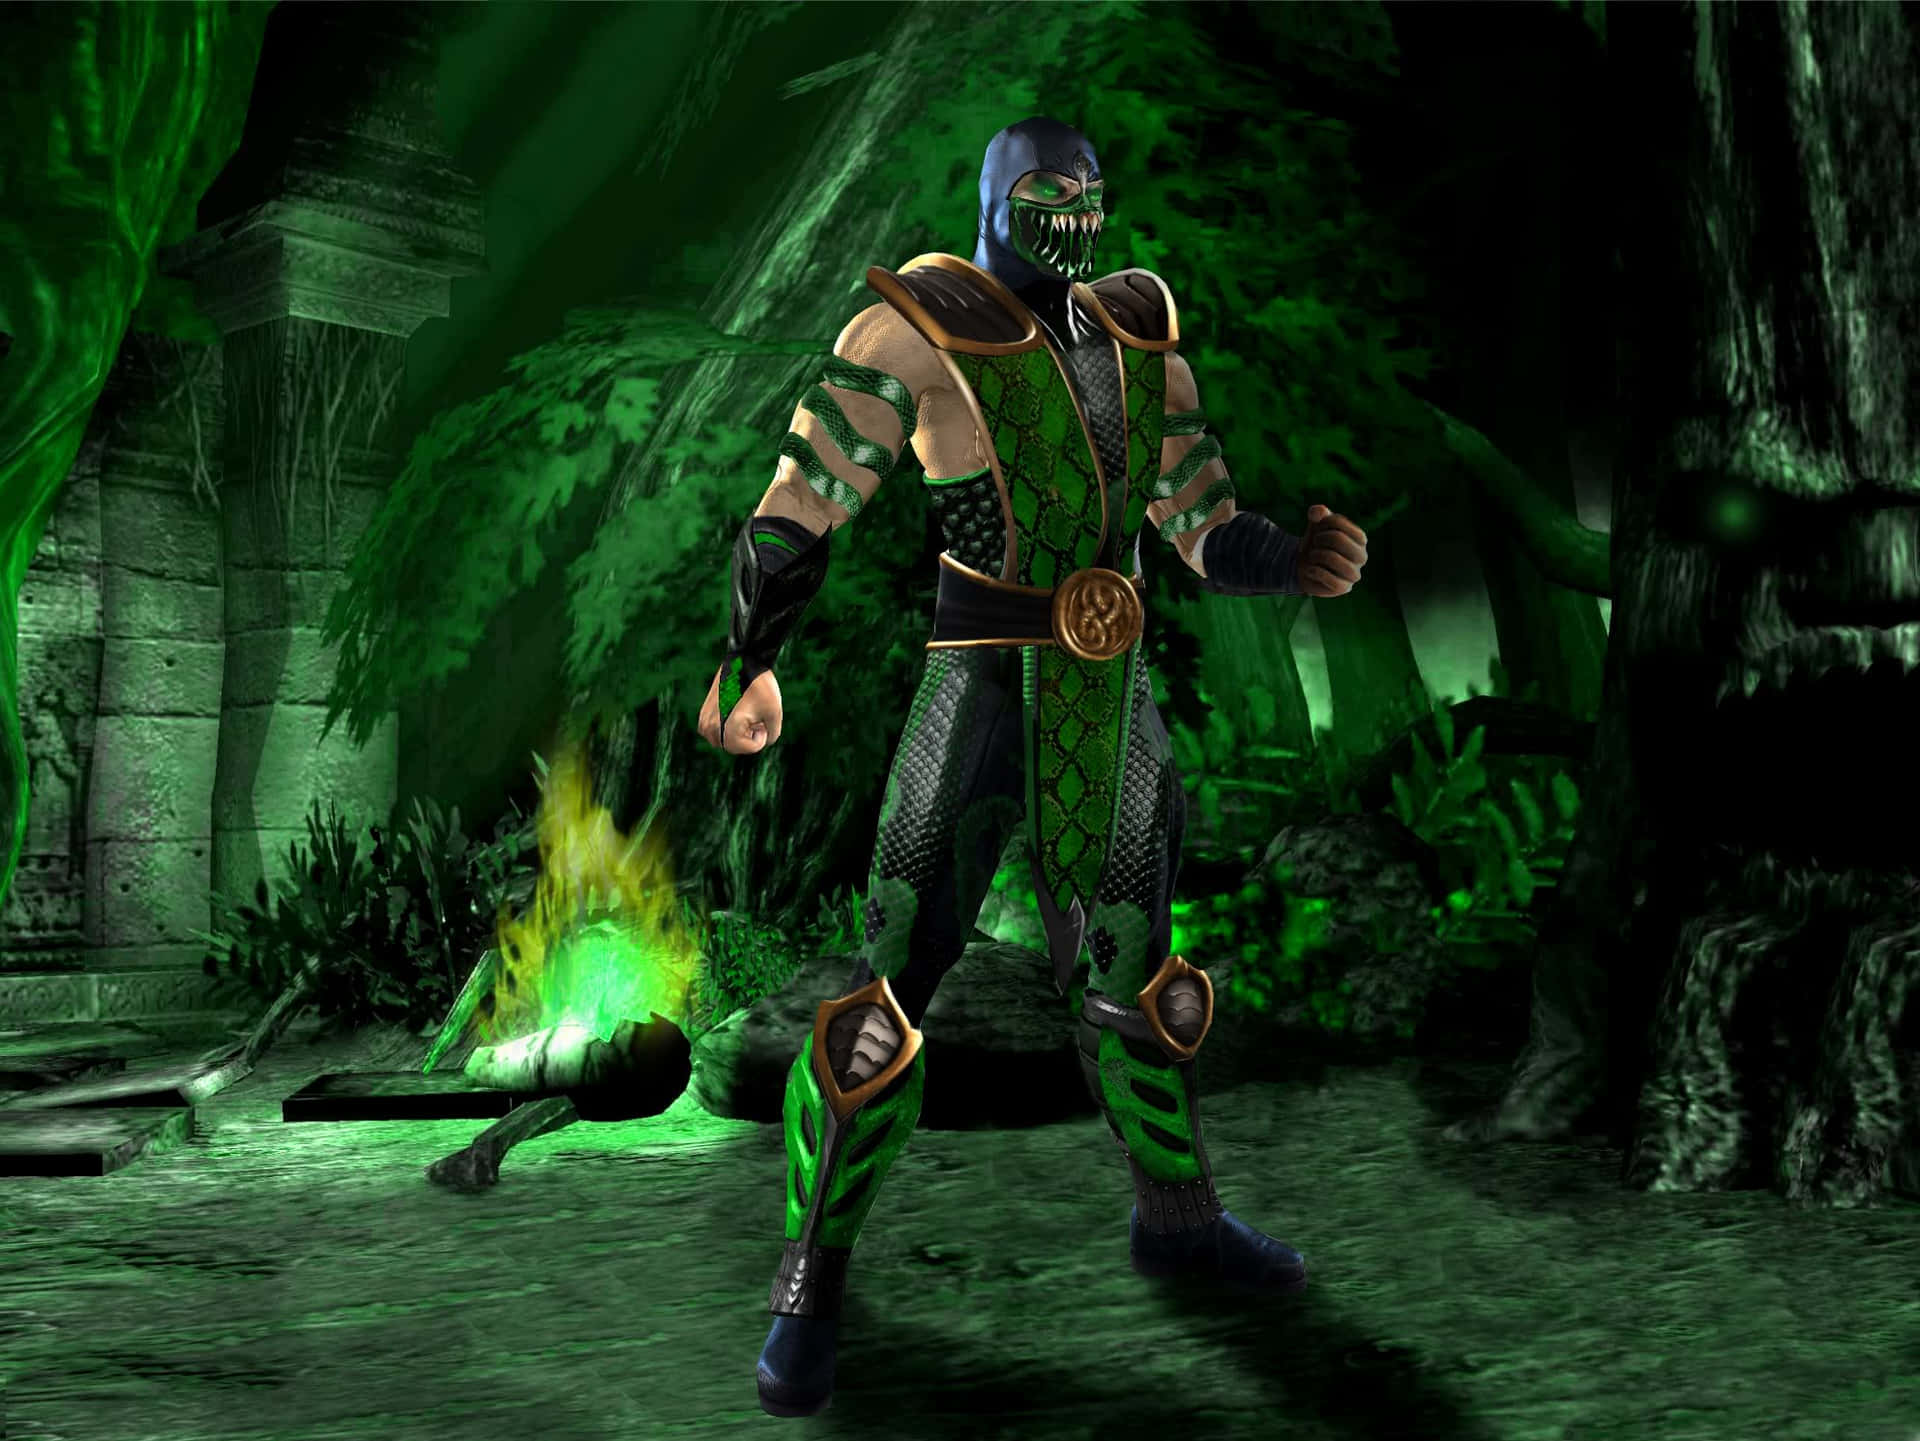 Elninja Mortal De Mortal Kombat: Reptile En Acción. Fondo de pantalla